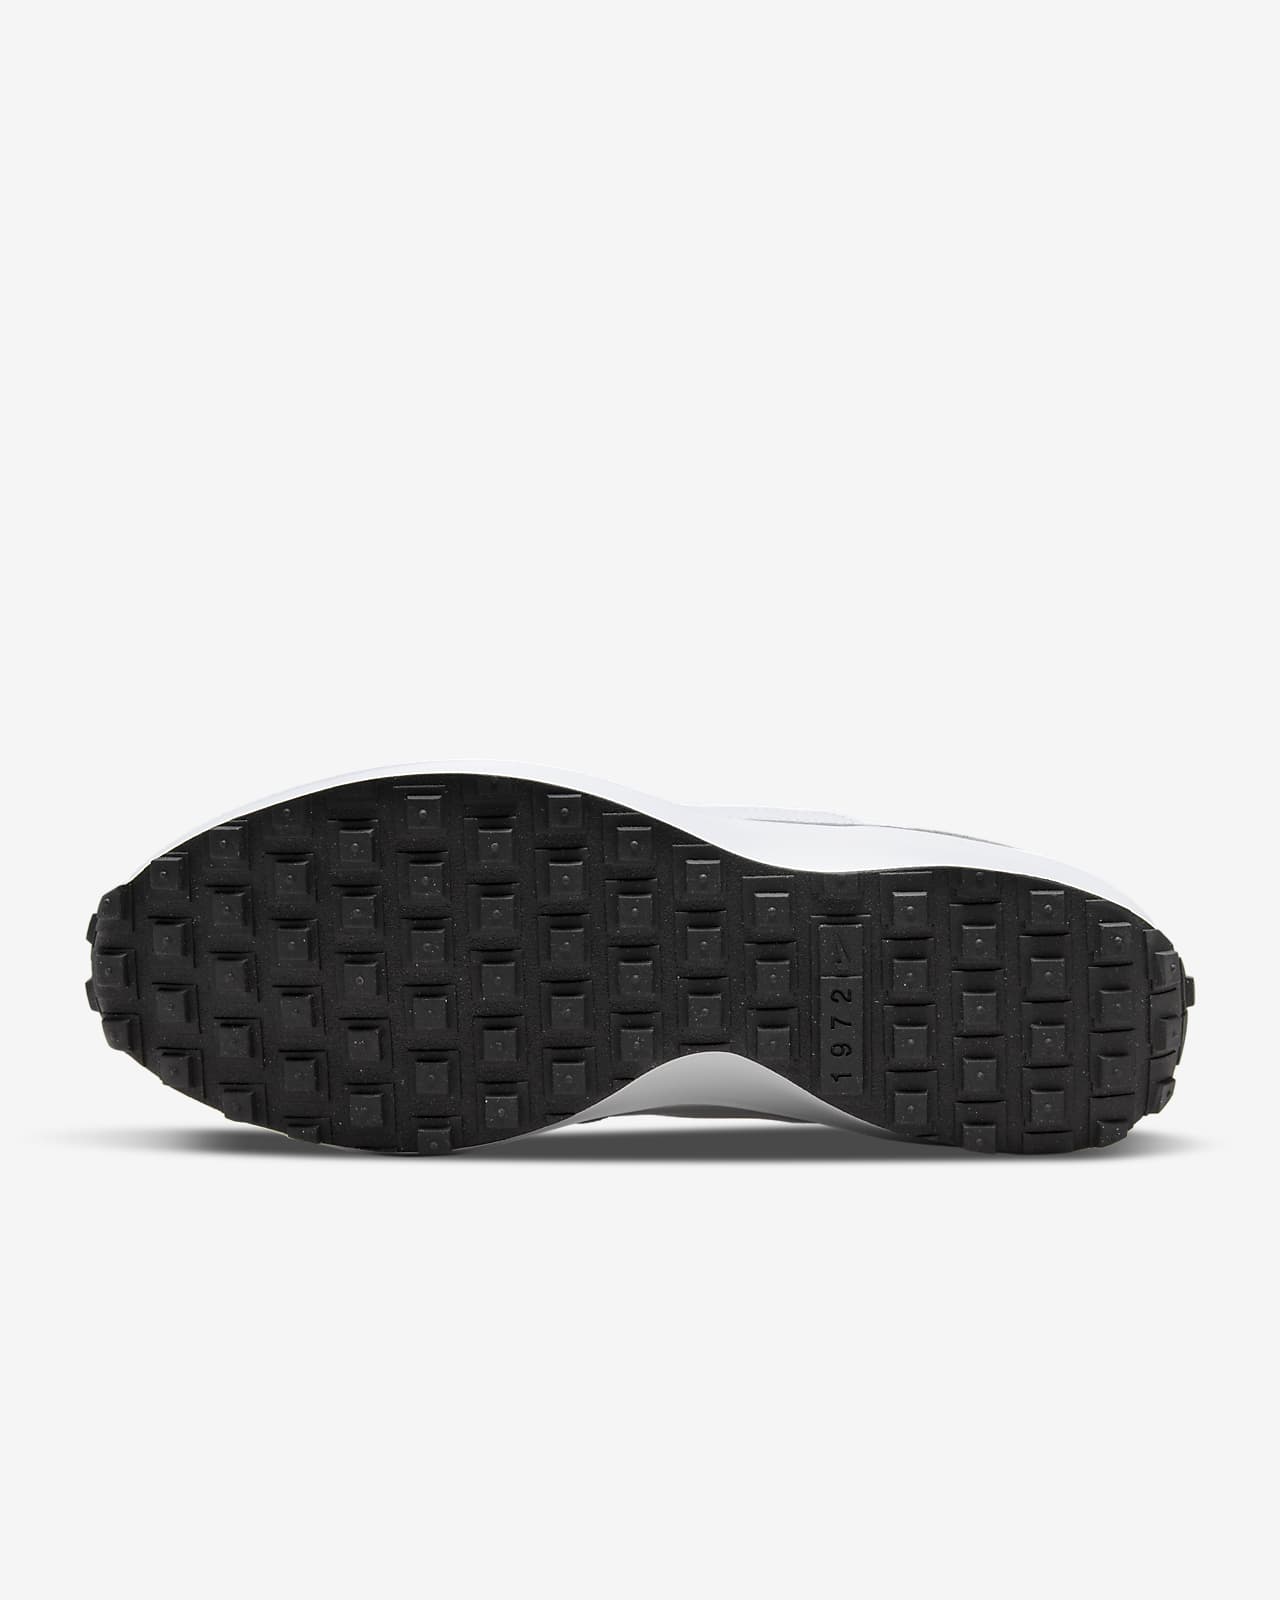 Nike Men's Waffle Debut Casual Shoes